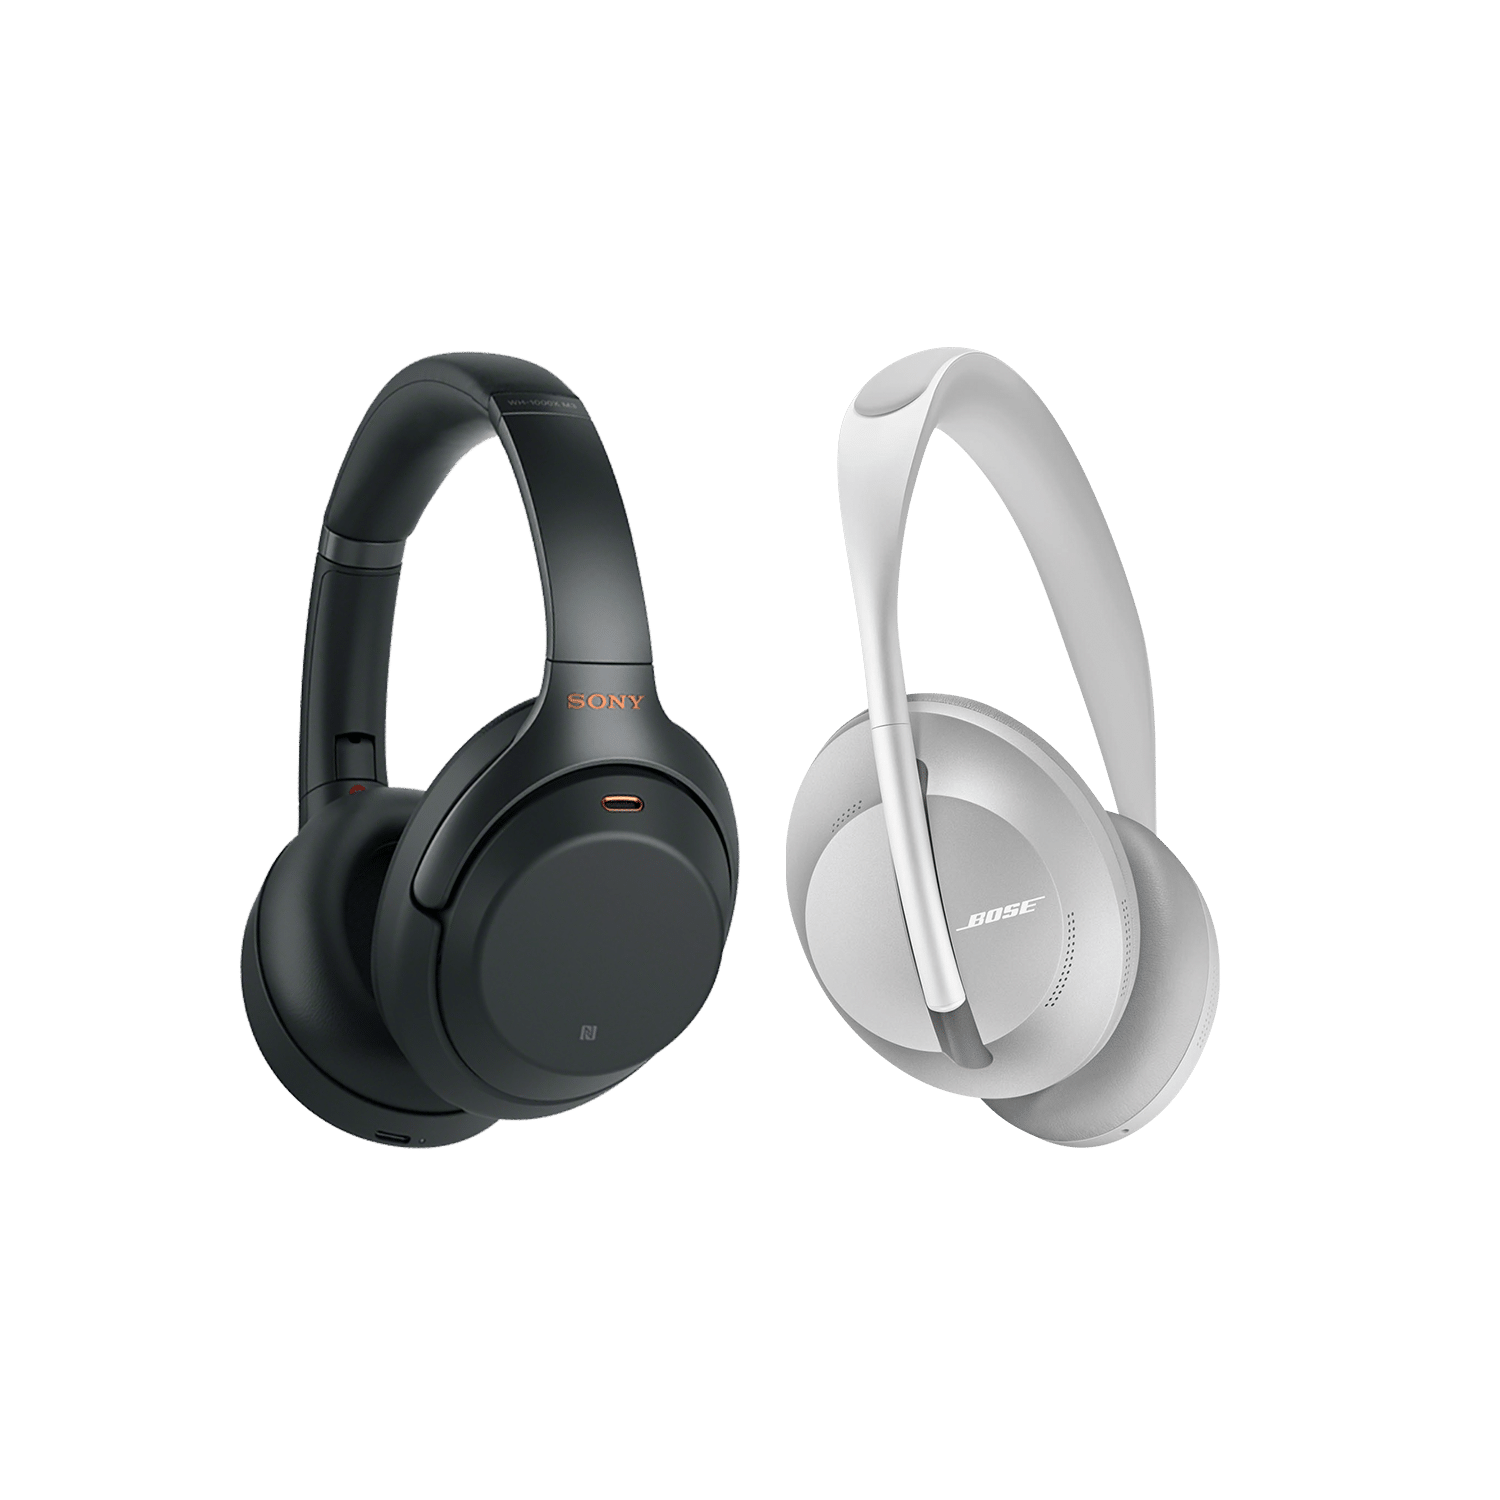 Comparatif : WH-1000X M3 vs Bose Noise Cancelling Headphones 700, lequel choisir ?